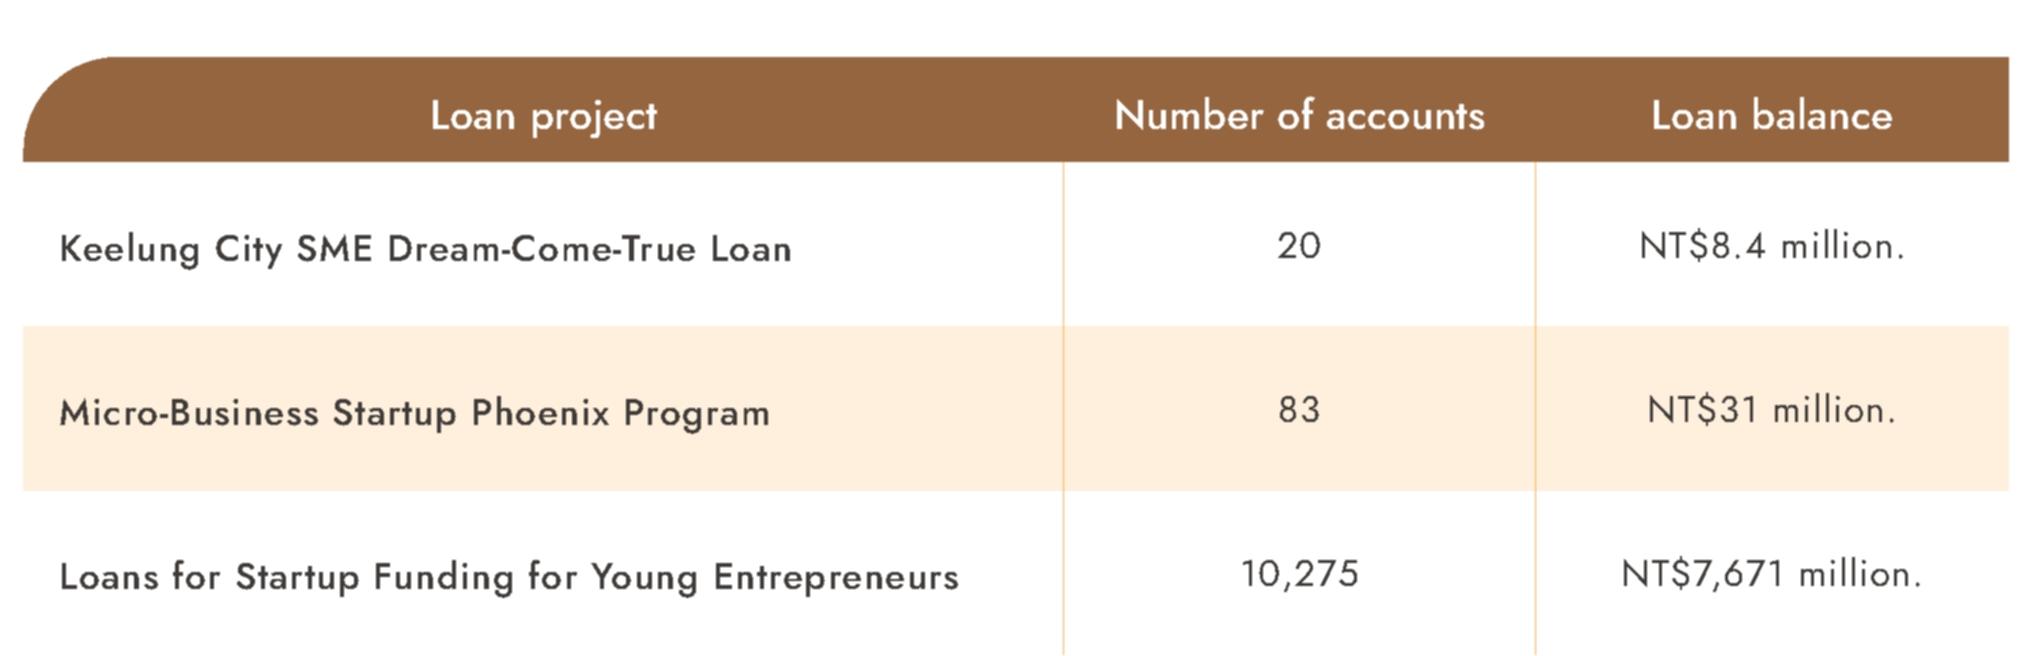 Entrepreneurship-related loans